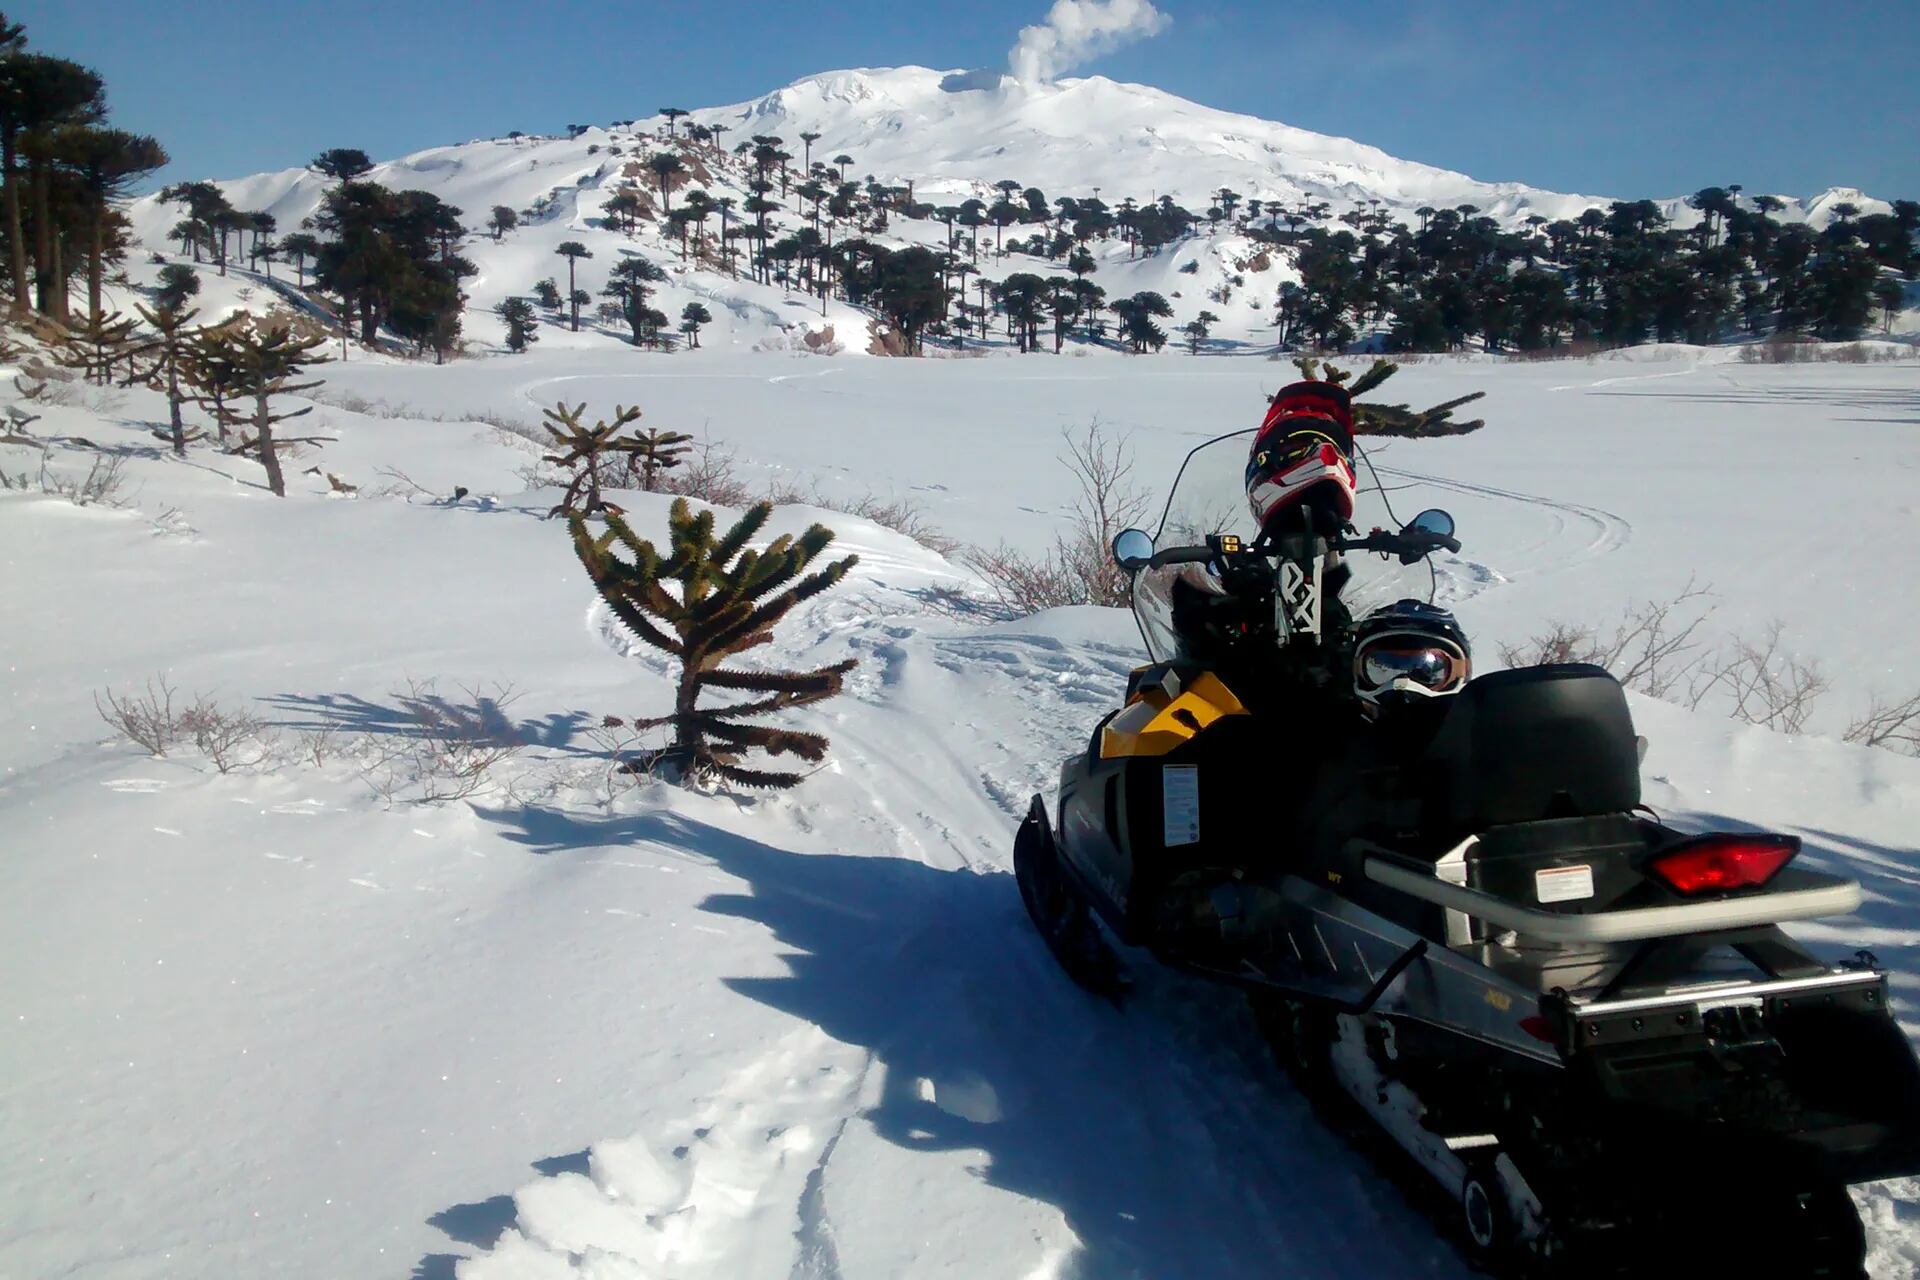 En fotos: subir al volcán Copahue en moto de nieve, una experiencia inolvidable